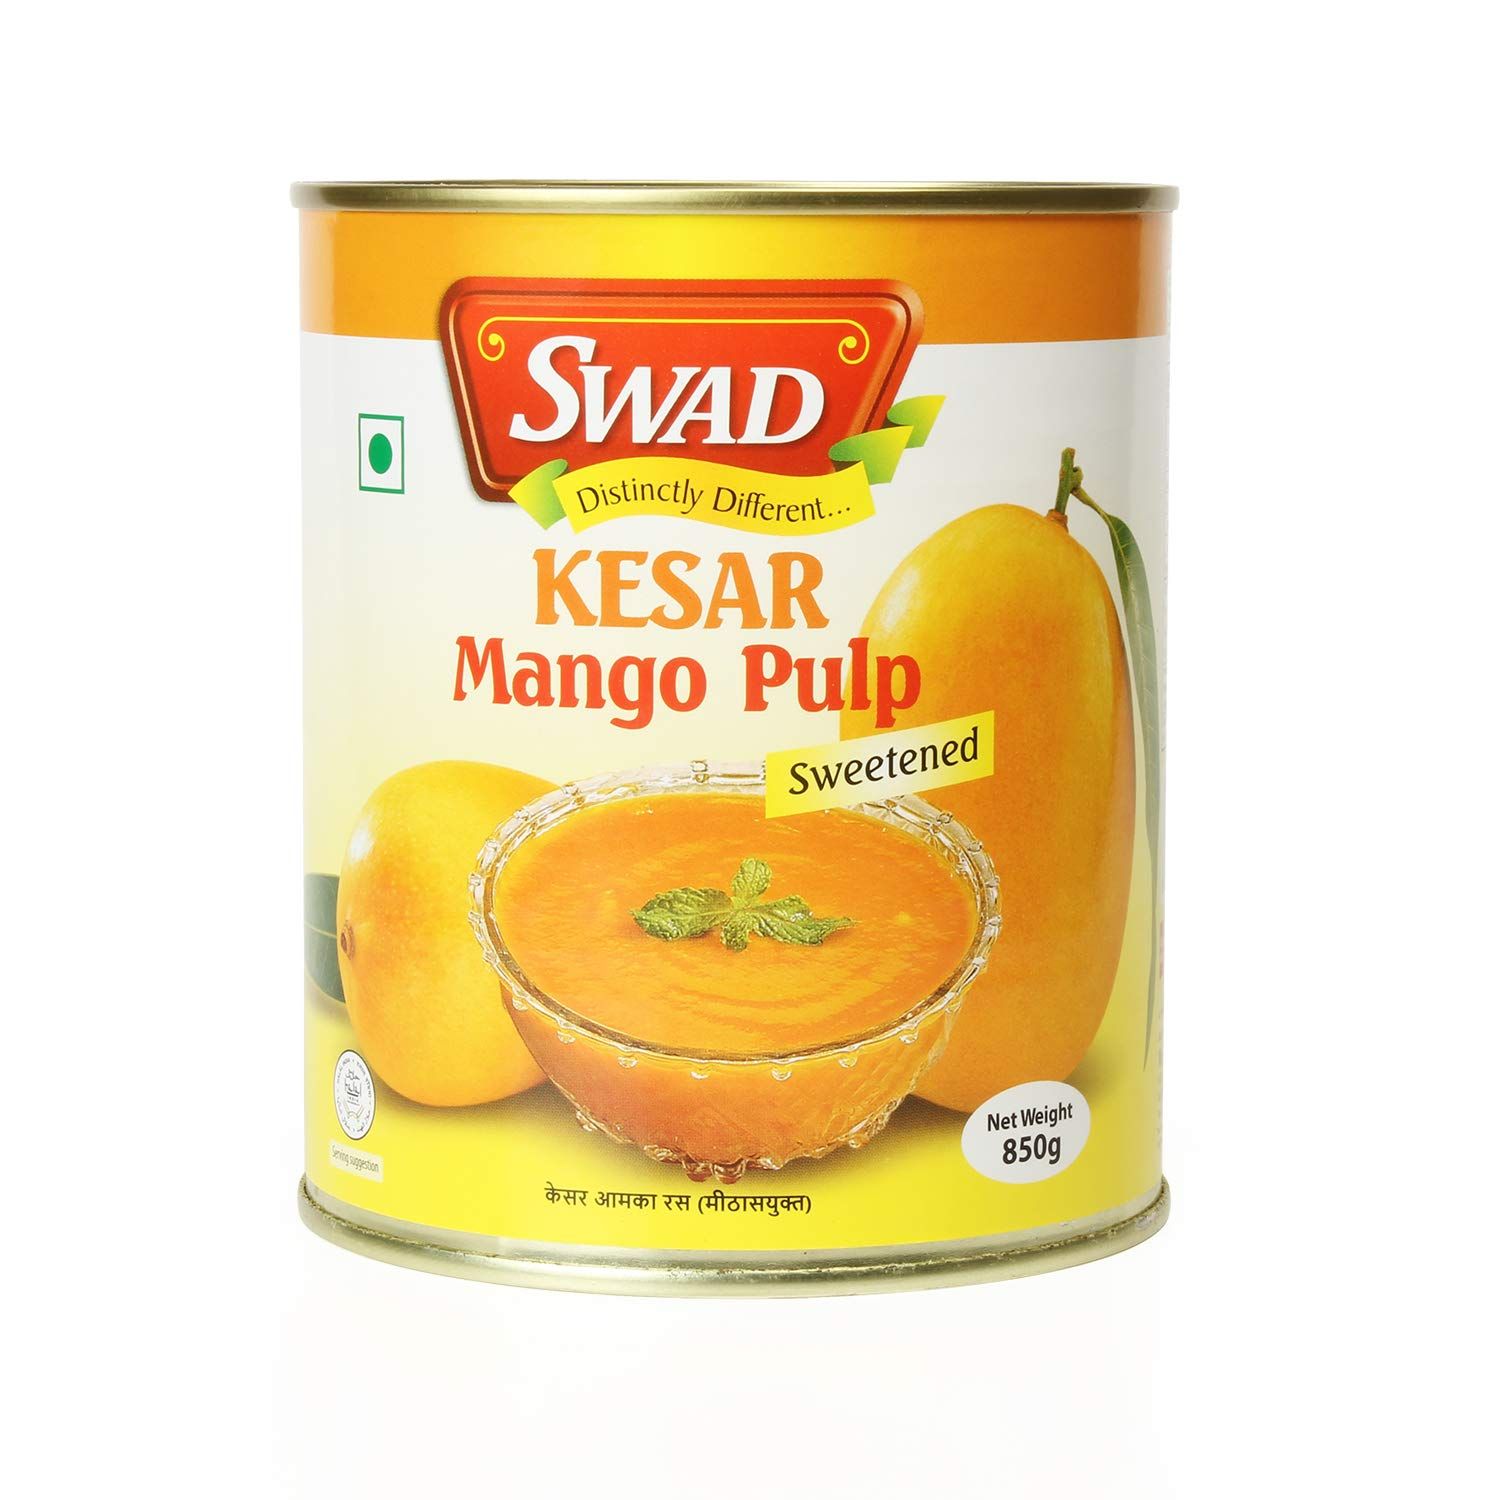 Swad Kesar Mango Pulp Image